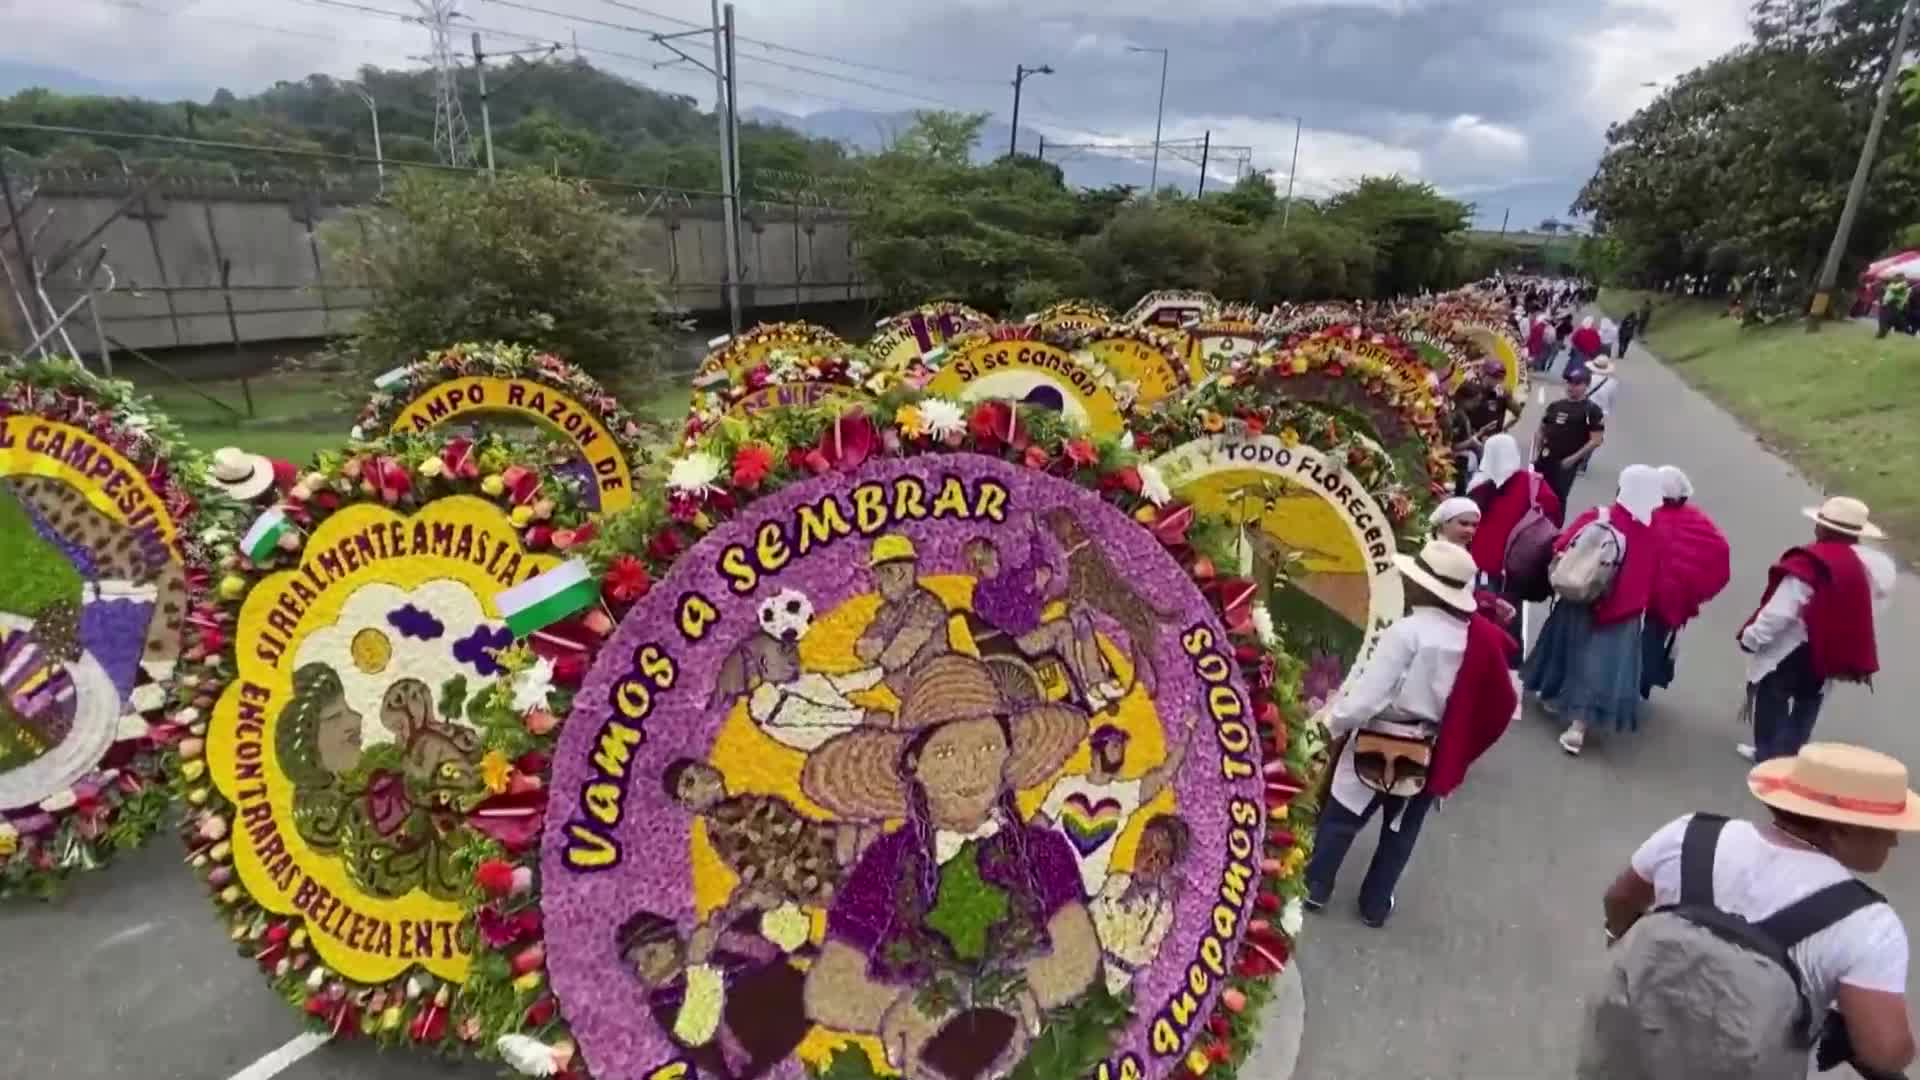 Колоритен фестивал събра десетки любители на цветята в Меделин (ВИДЕО)